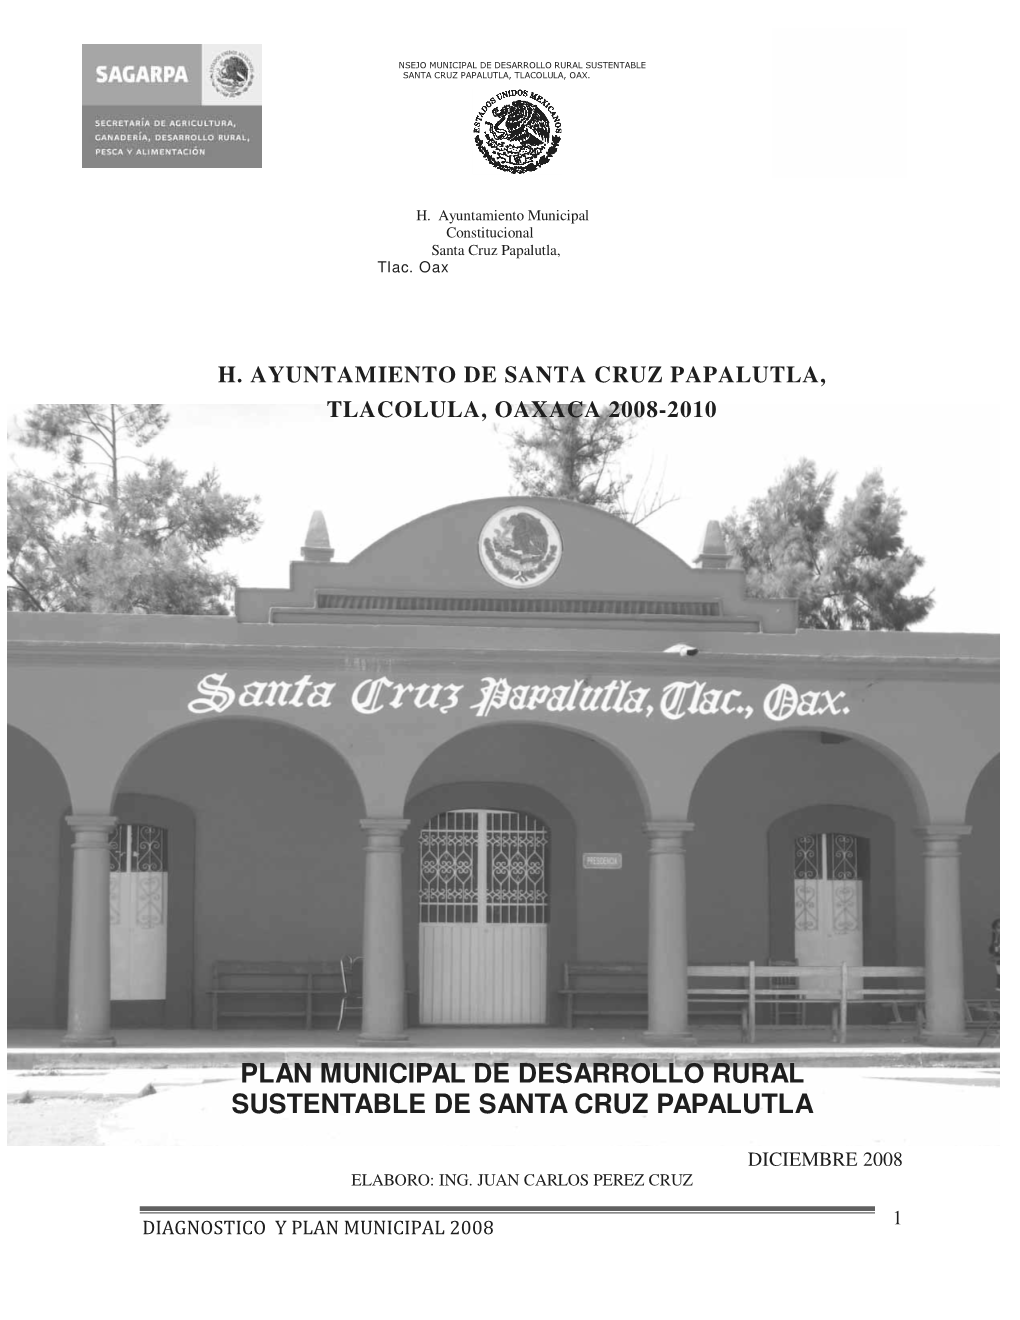 Plan Municipal De Desarrollo Rural Sustentable De Santa Cruz Papalutla